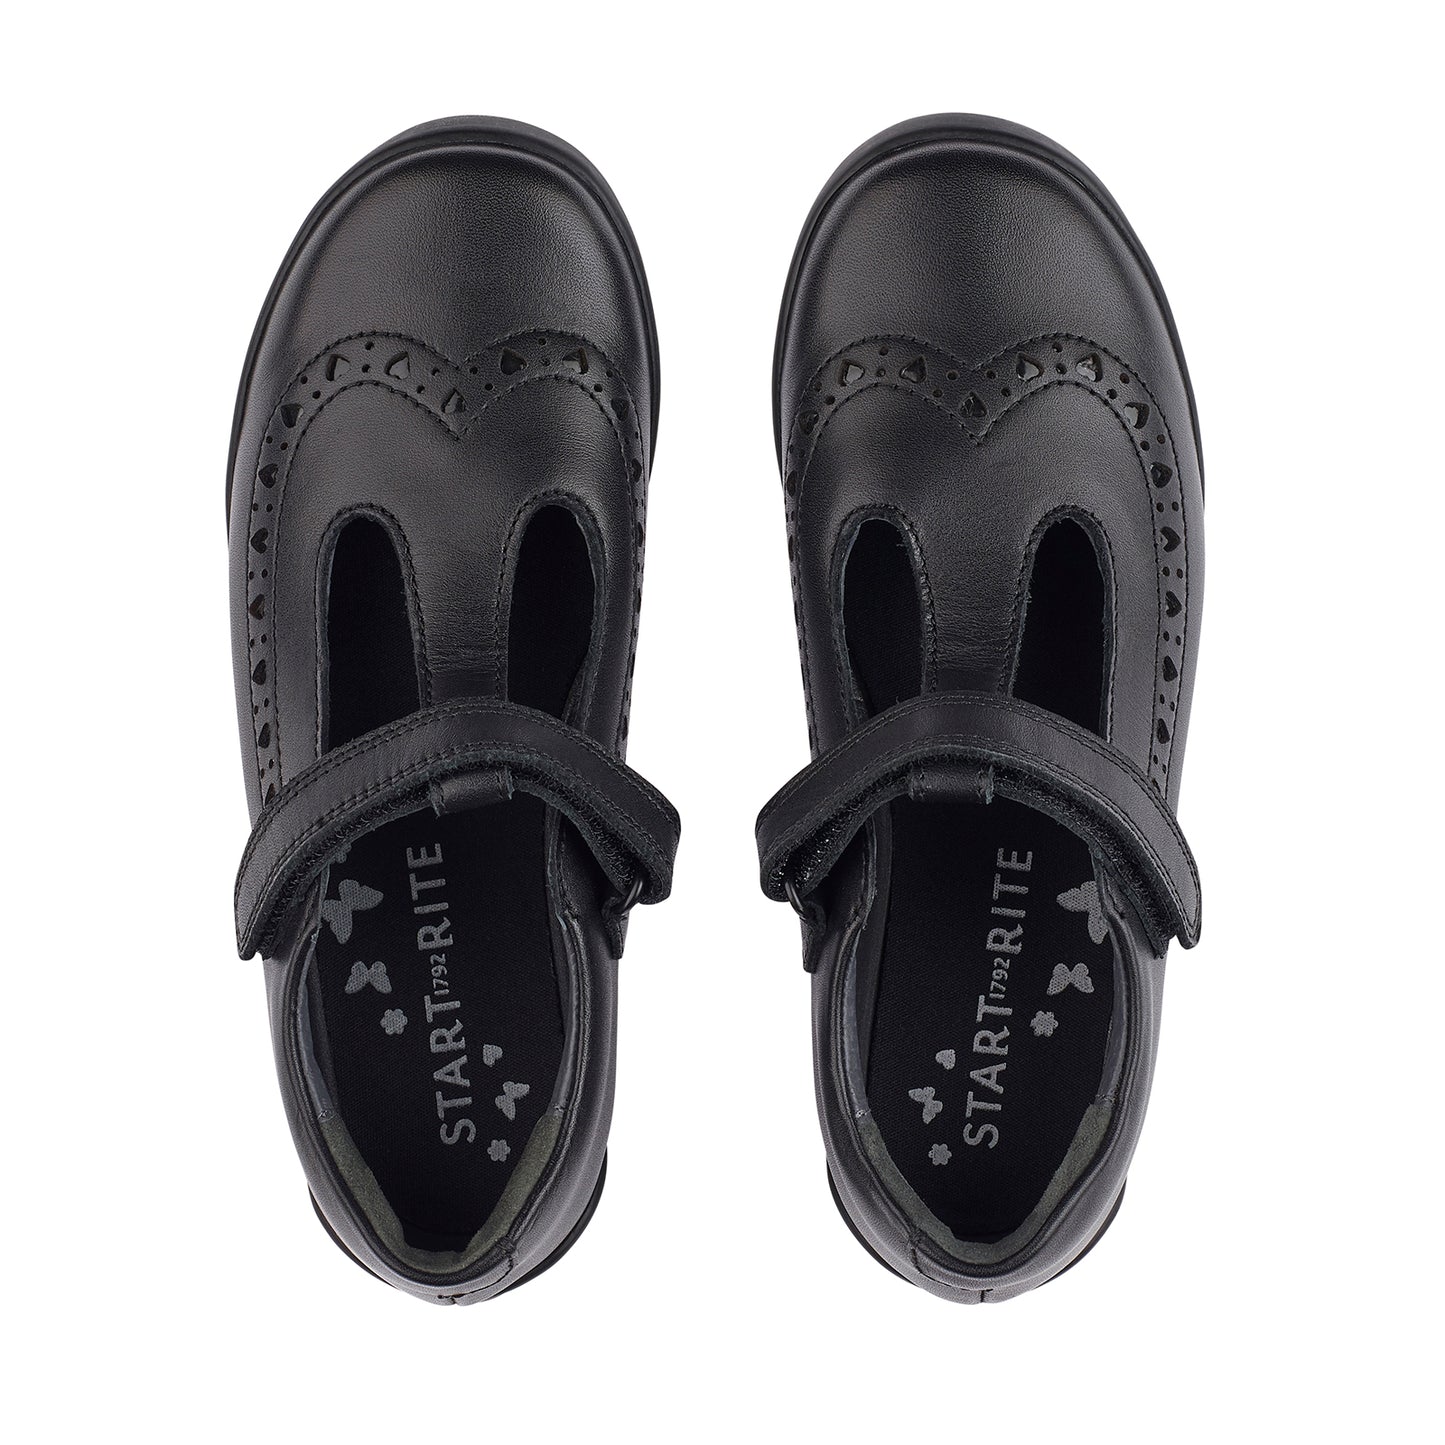 Start-Rite Leapfrog Black Leather School Shoes